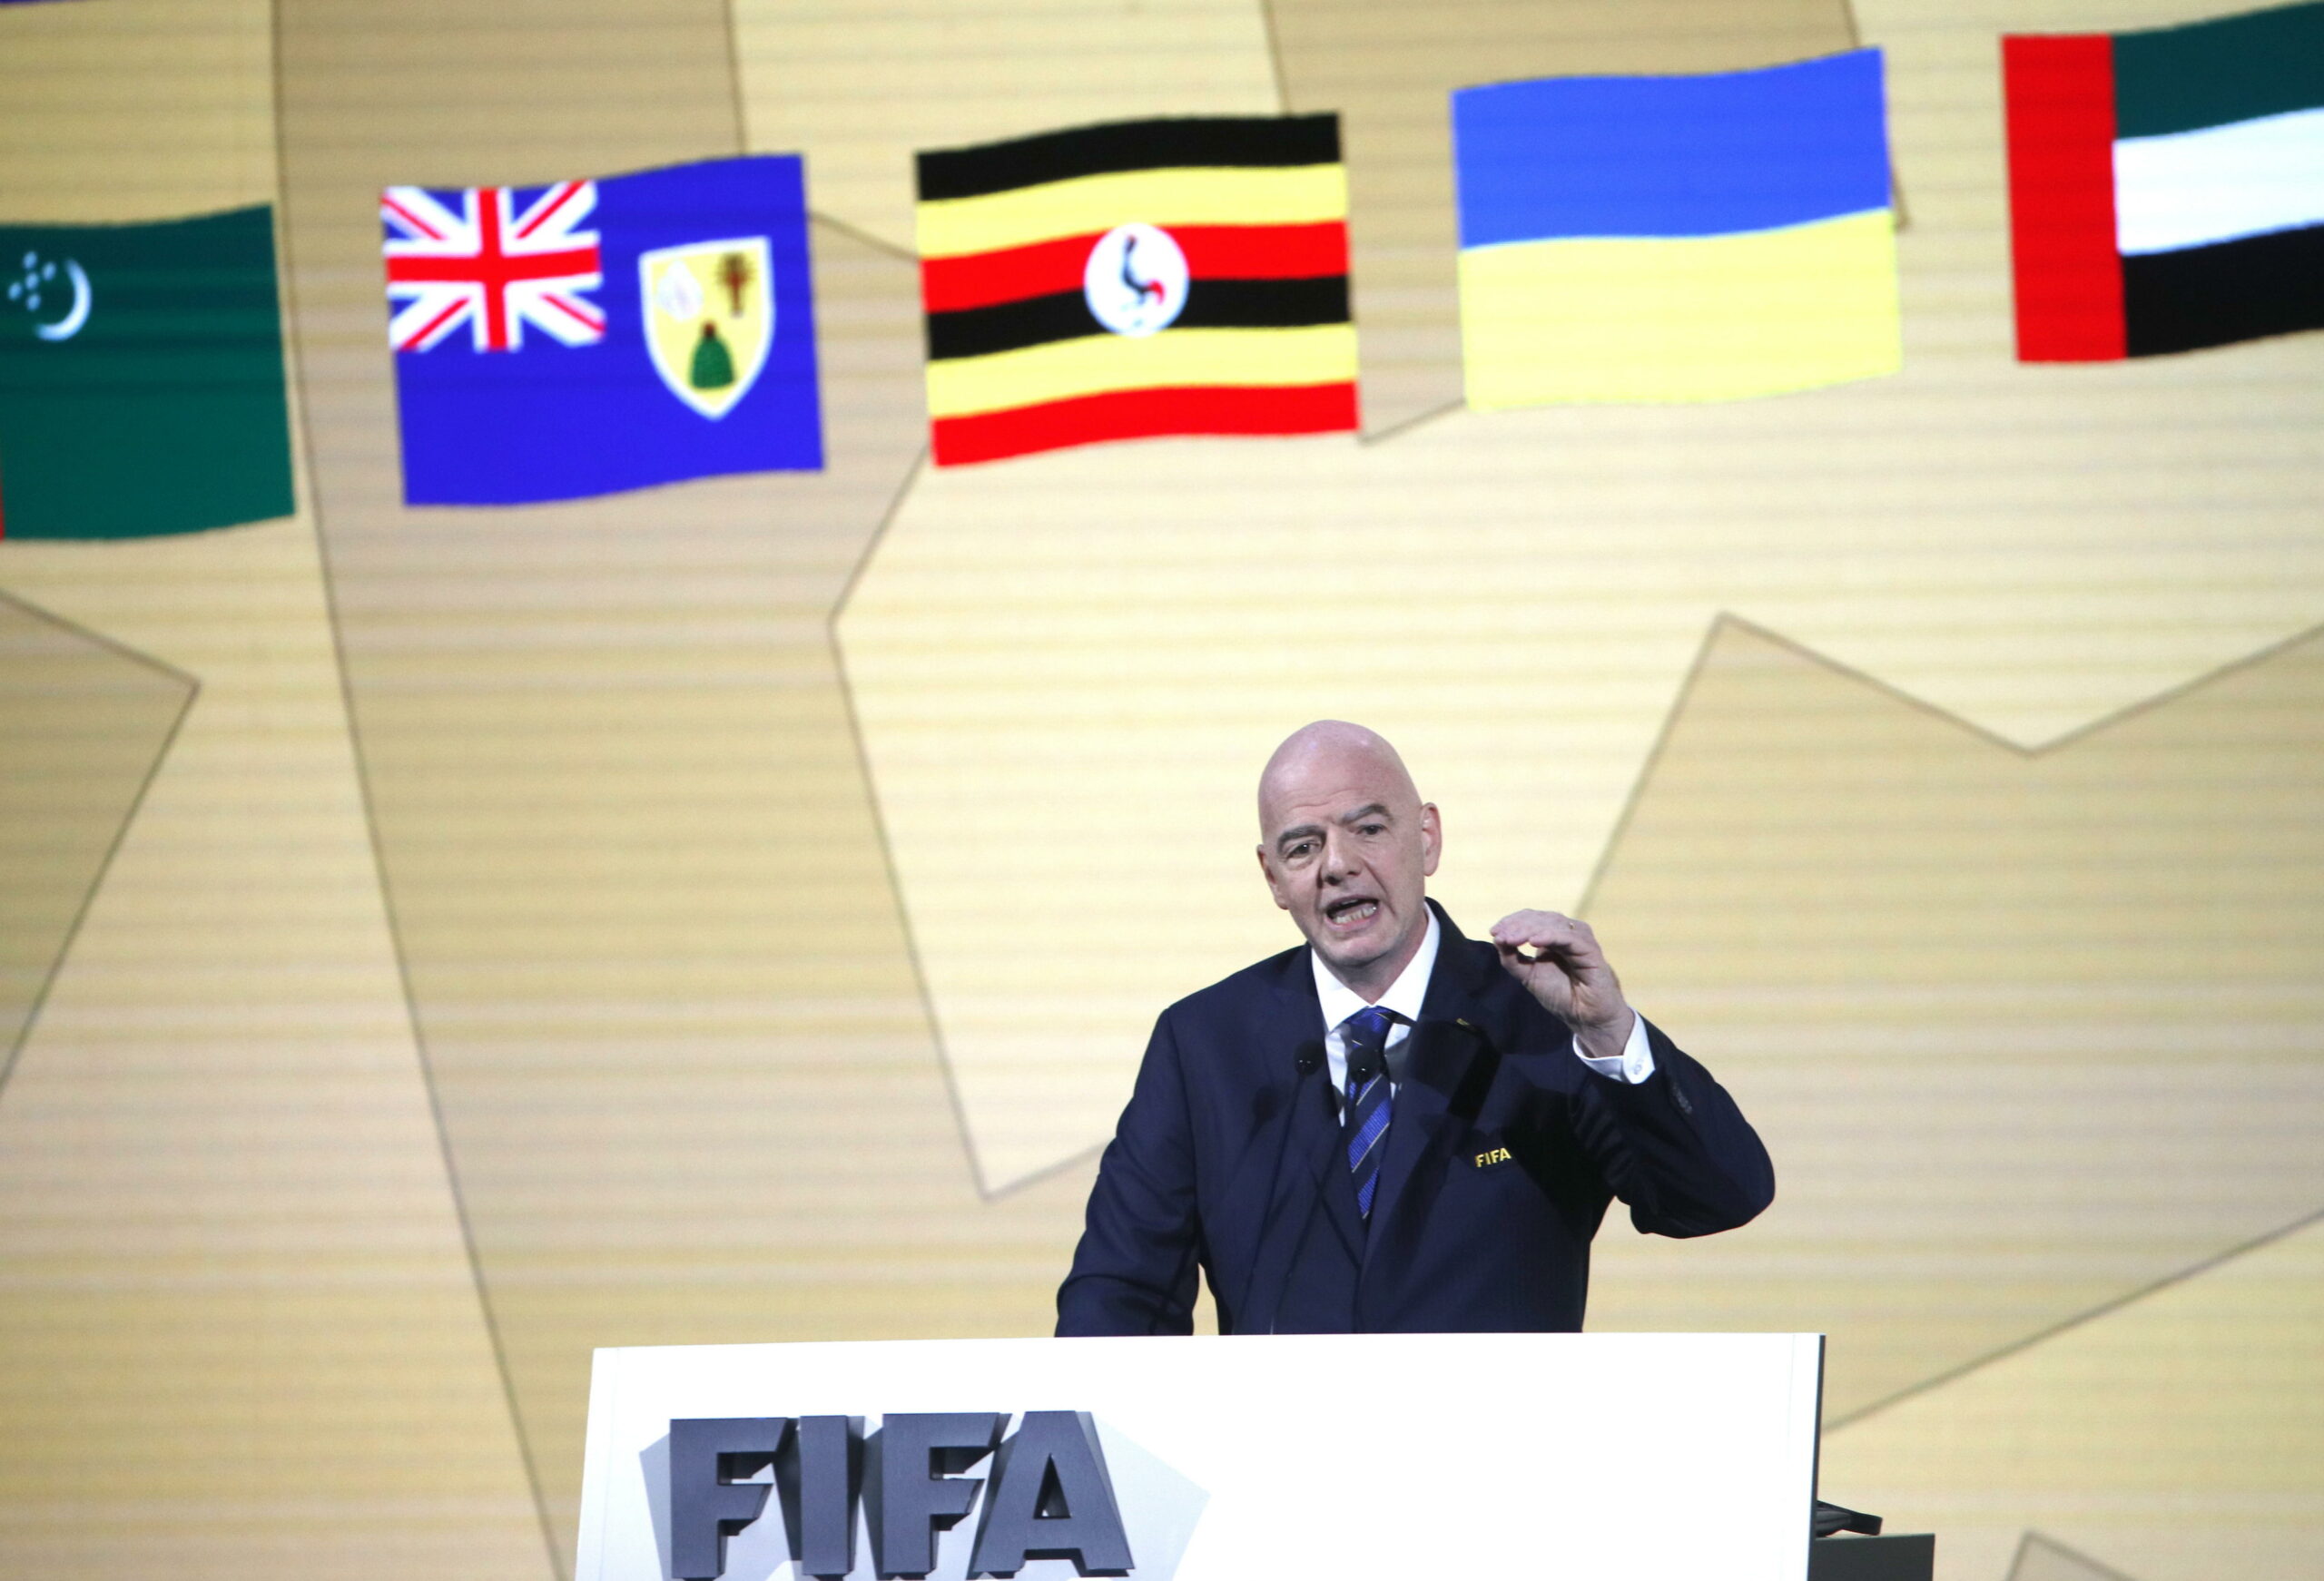 Tensión en el Congreso de la Fifa: la entidad podría suspender a federación de Israel